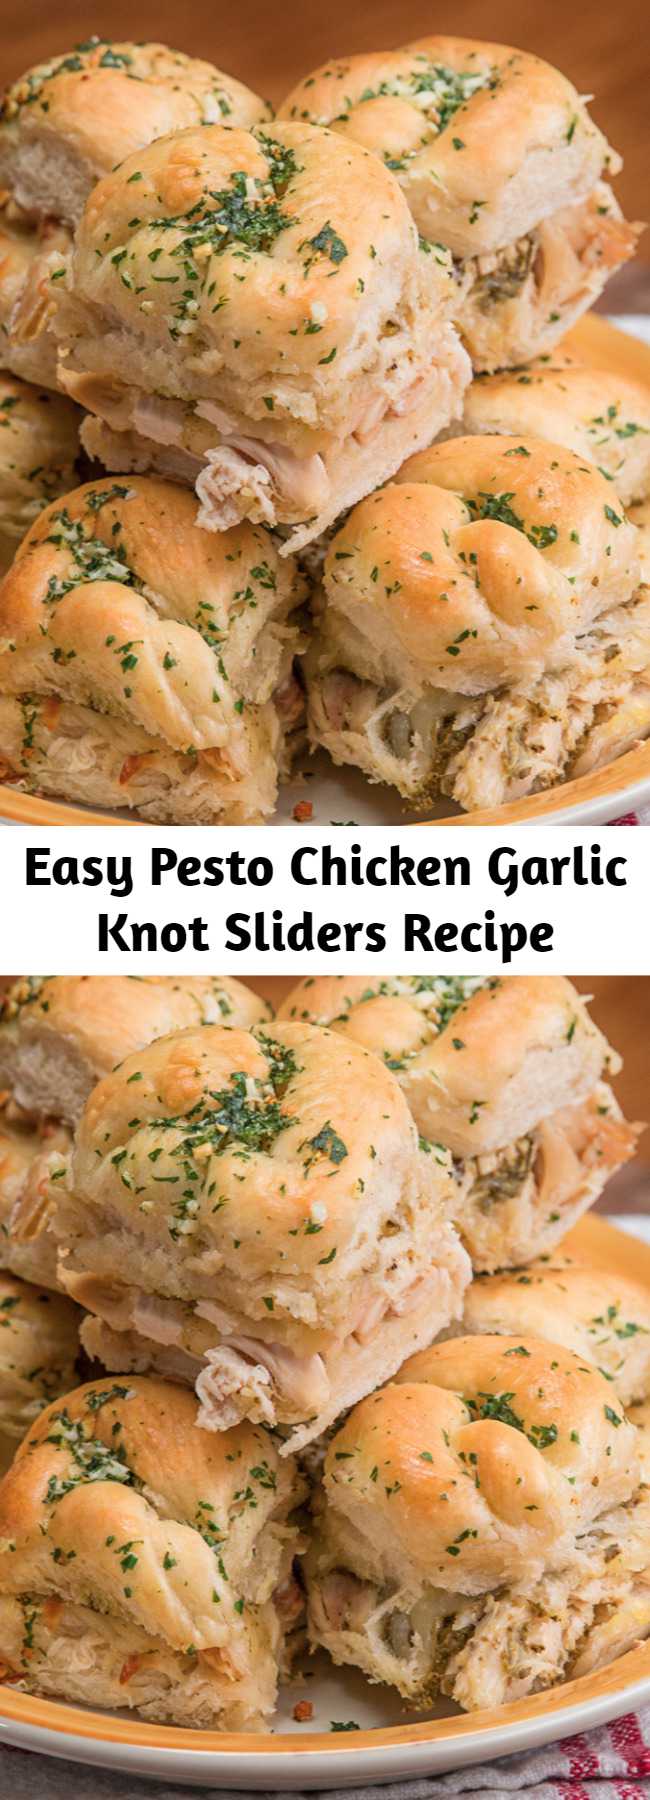 Easy Pesto Chicken Garlic Knot Sliders Recipe